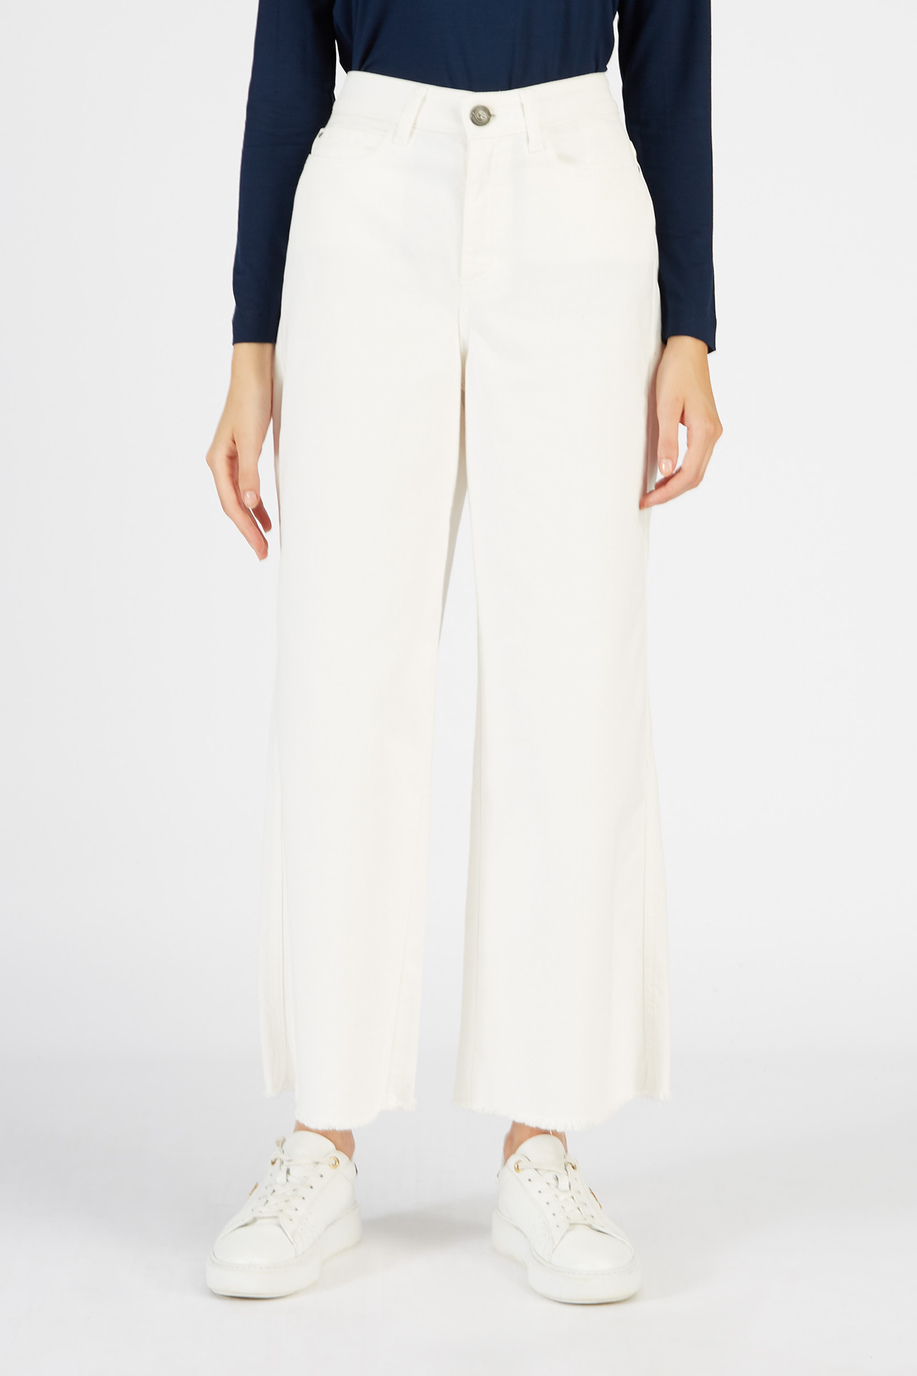 Weite Damen-Hose aus Stretch-Baumwolle mit hohem Bund - Unsere Favoriten für sie | La Martina - Official Online Shop